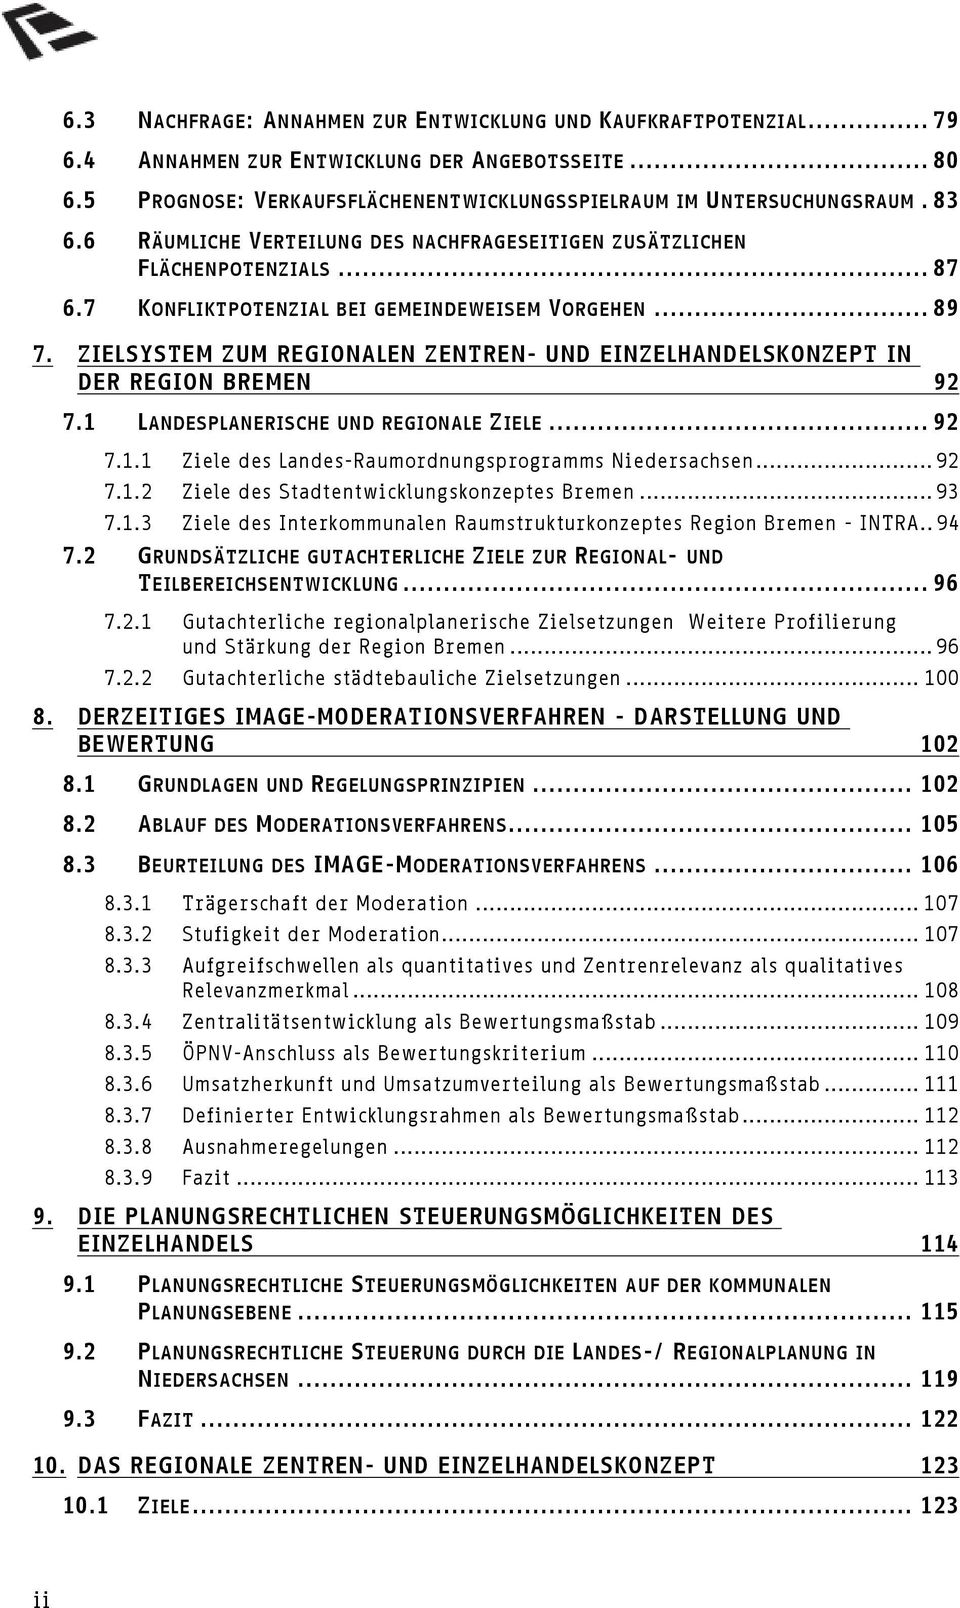 ZIELSYSTEM ZUM REGIONALEN ZENTREN- UND EINZELHANDELSKONZEPT IN DER REGION BREMEN 92 7.1 LANDESPLANERISCHE UND REGIONALE ZIELE...92 7.1.1 Ziele des Landes-Raumordnungsprogramms Niedersachsen...92 7.1.2 Ziele des Stadtentwicklungskonzeptes Bremen.